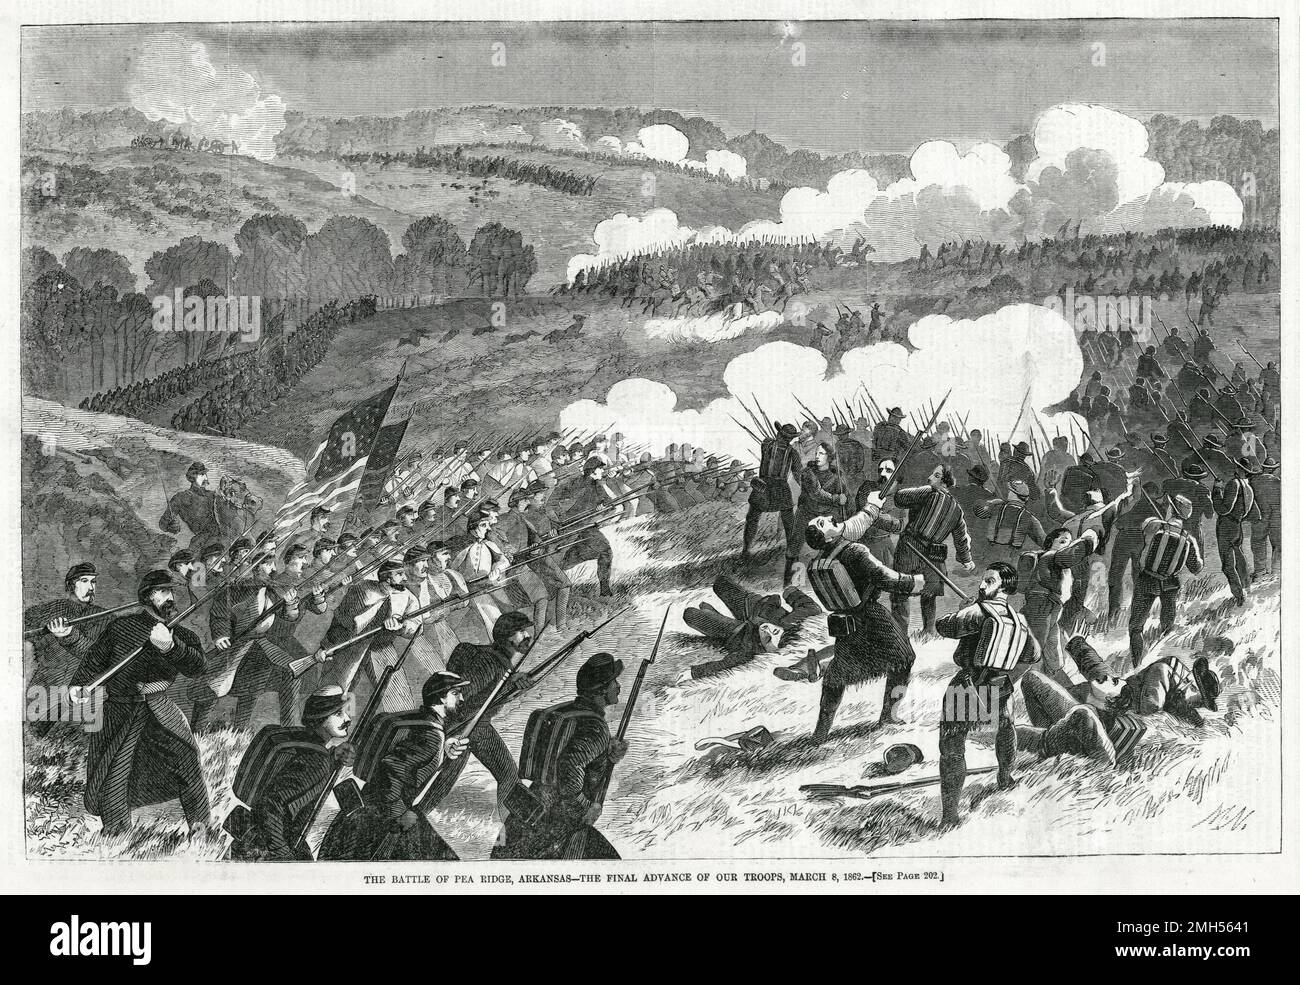 La Battaglia di Pea Ridge (la Battaglia di Elkhorn Tavern) fu una battaglia della guerra civile americana combattuta il 7-8th marzo 1862 in Arkansas. L'assalto era sotto il comando di Samuel Curtis, ed era una vittoria unionista. L'immagine raffigura l'avanzamento finale delle truppe unioniste. Foto Stock